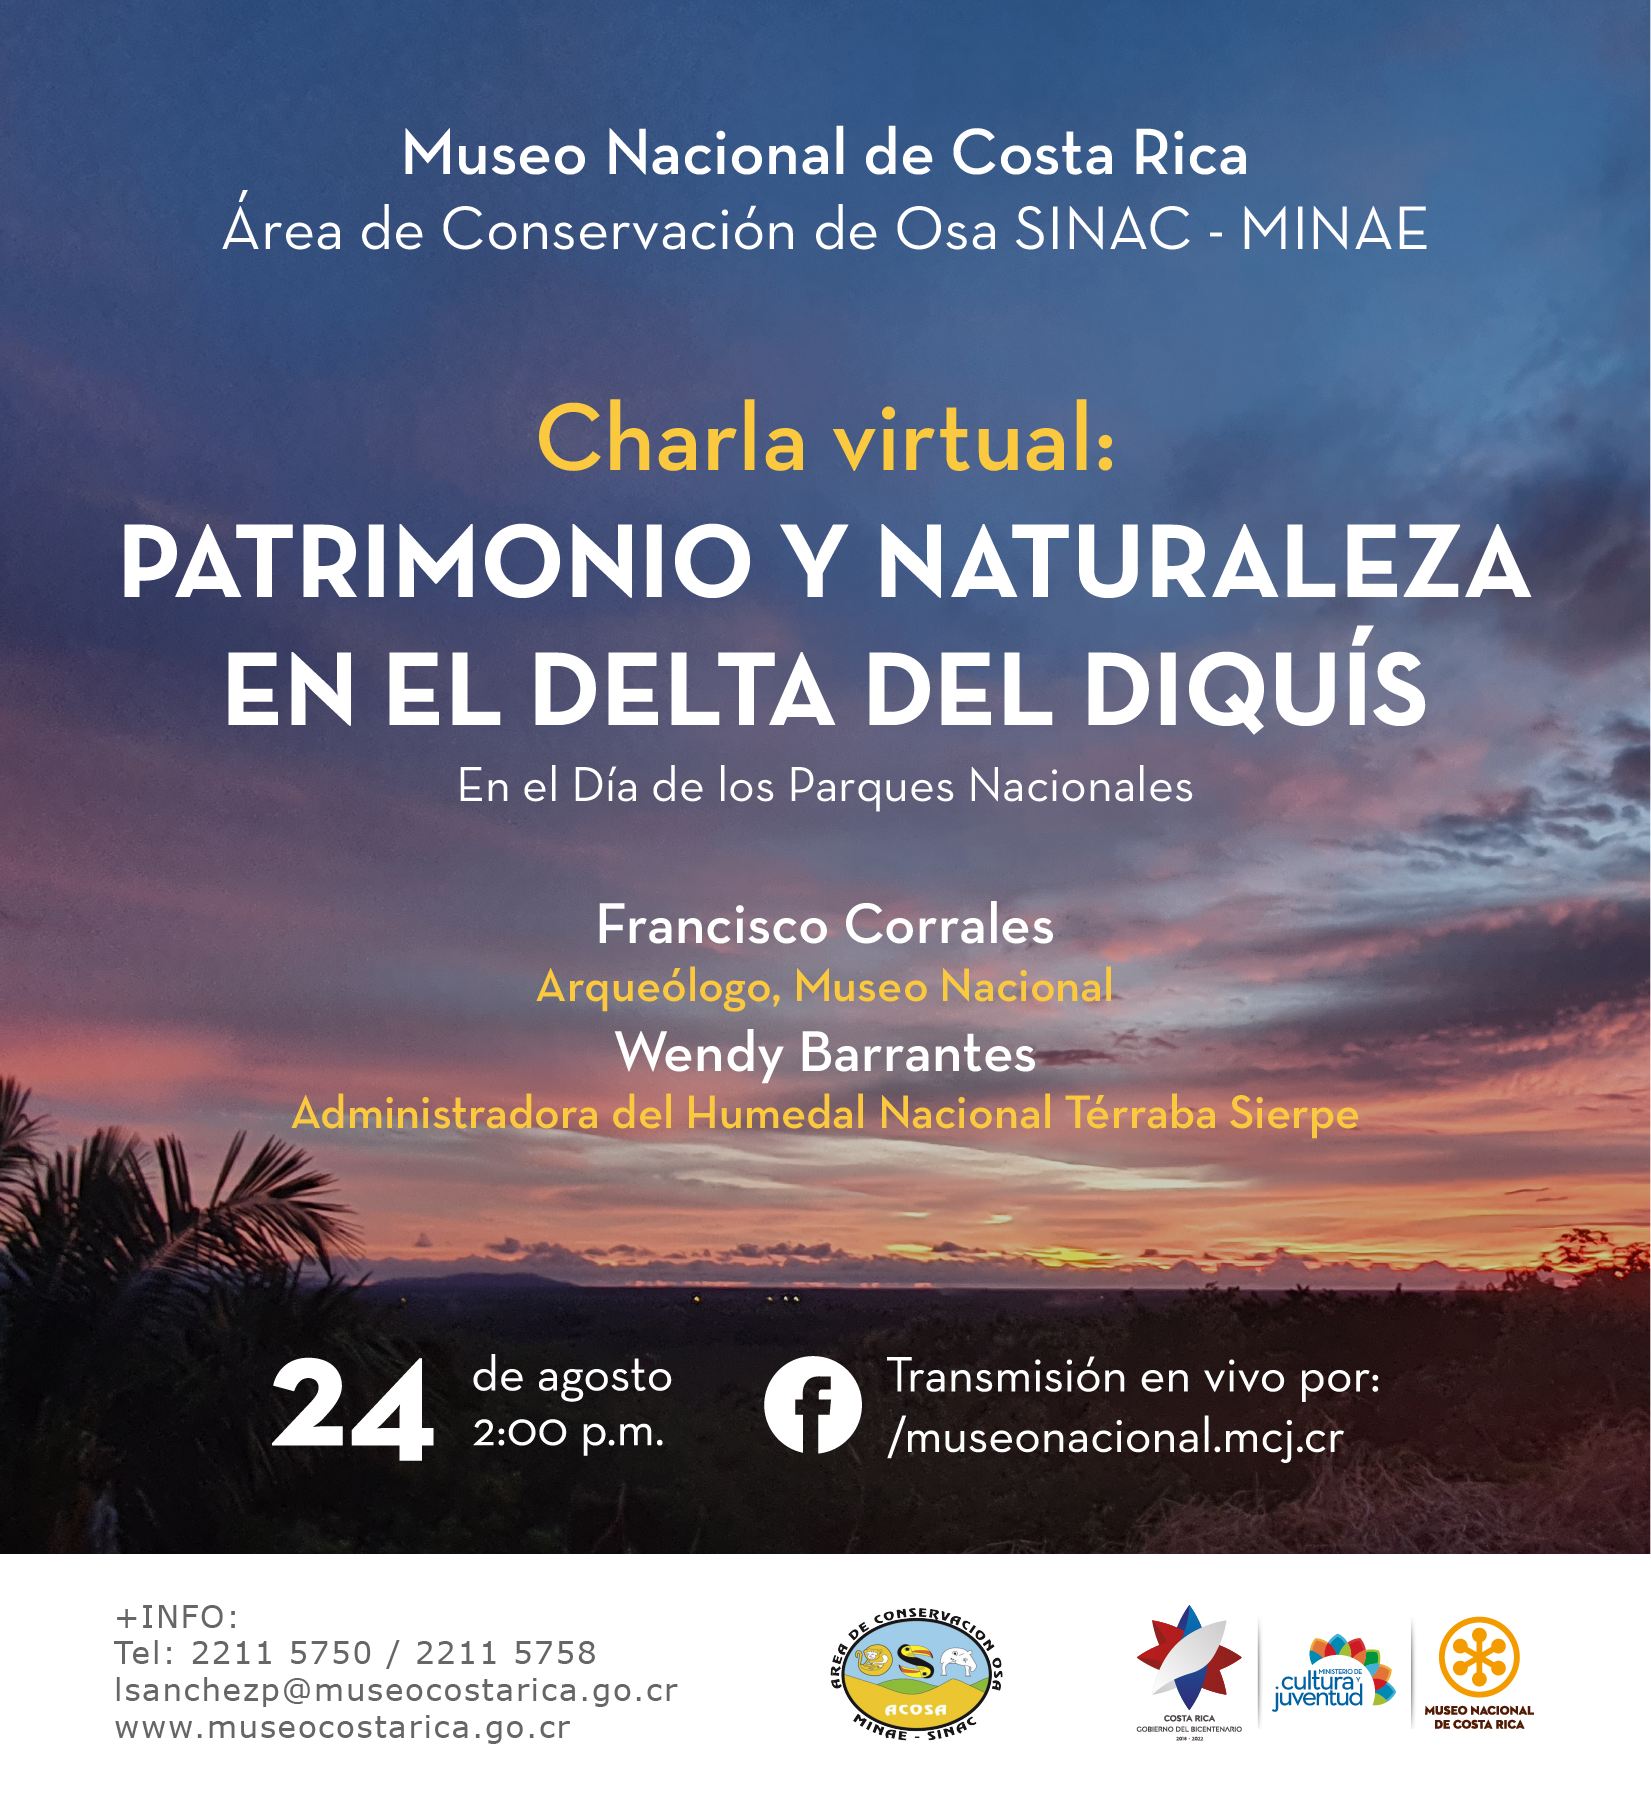 Invitación charla virtual Patrimonio y naturaleza en el Delta del Diquís - Día de los Parques Nacionales